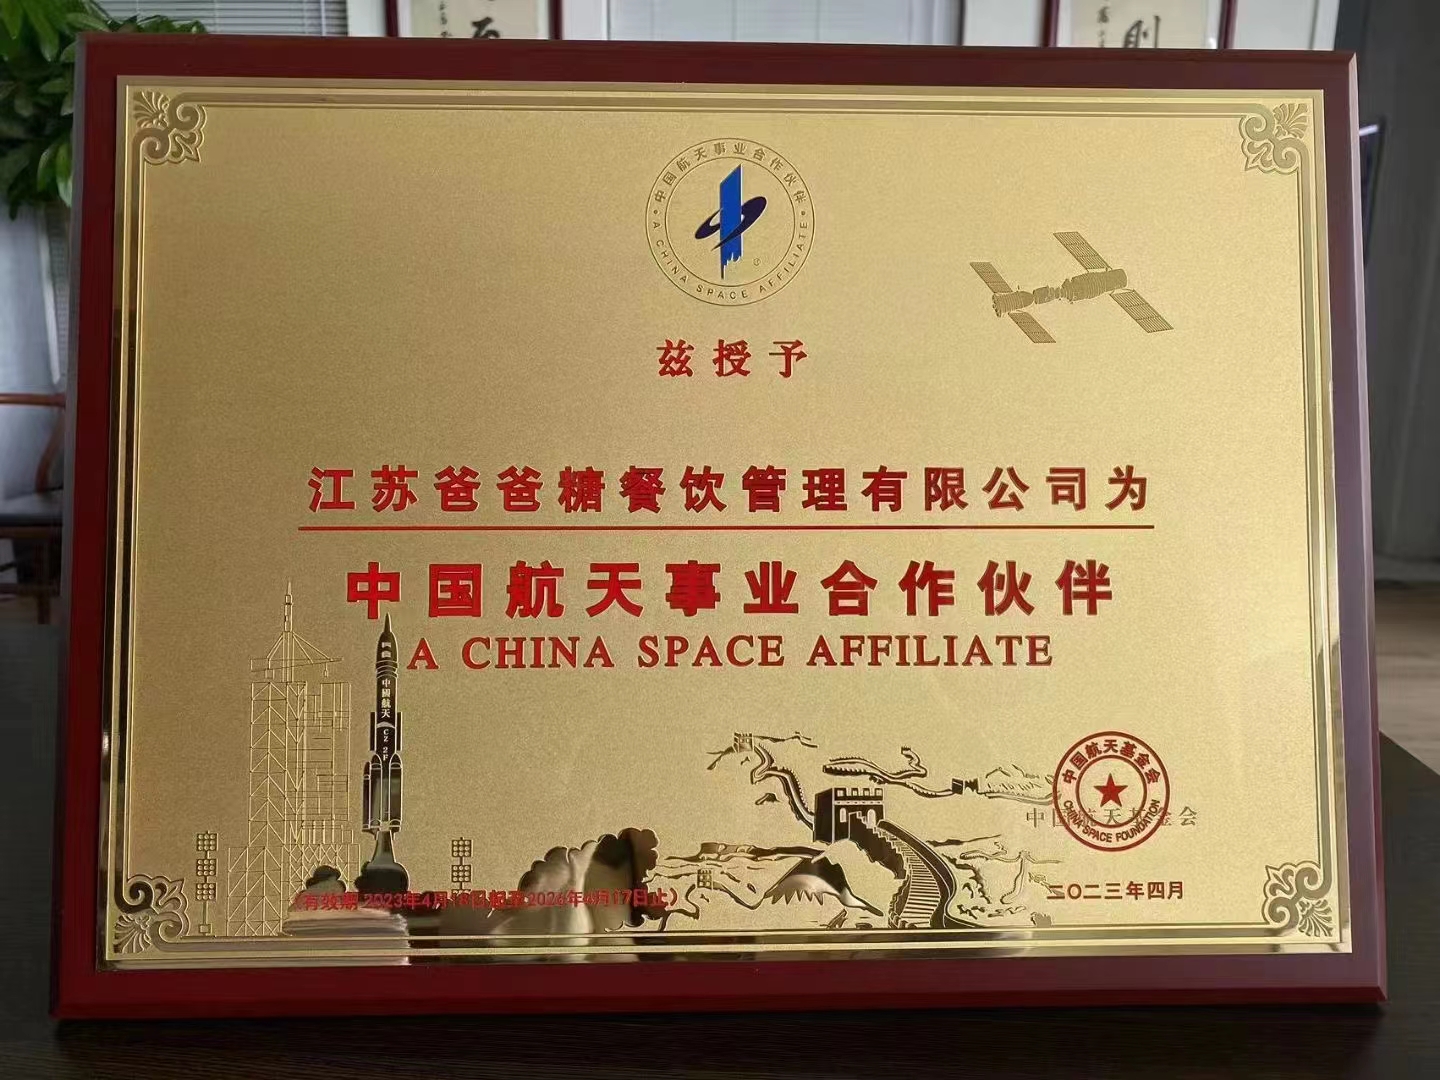 中国航天事业合作伙伴.jpg